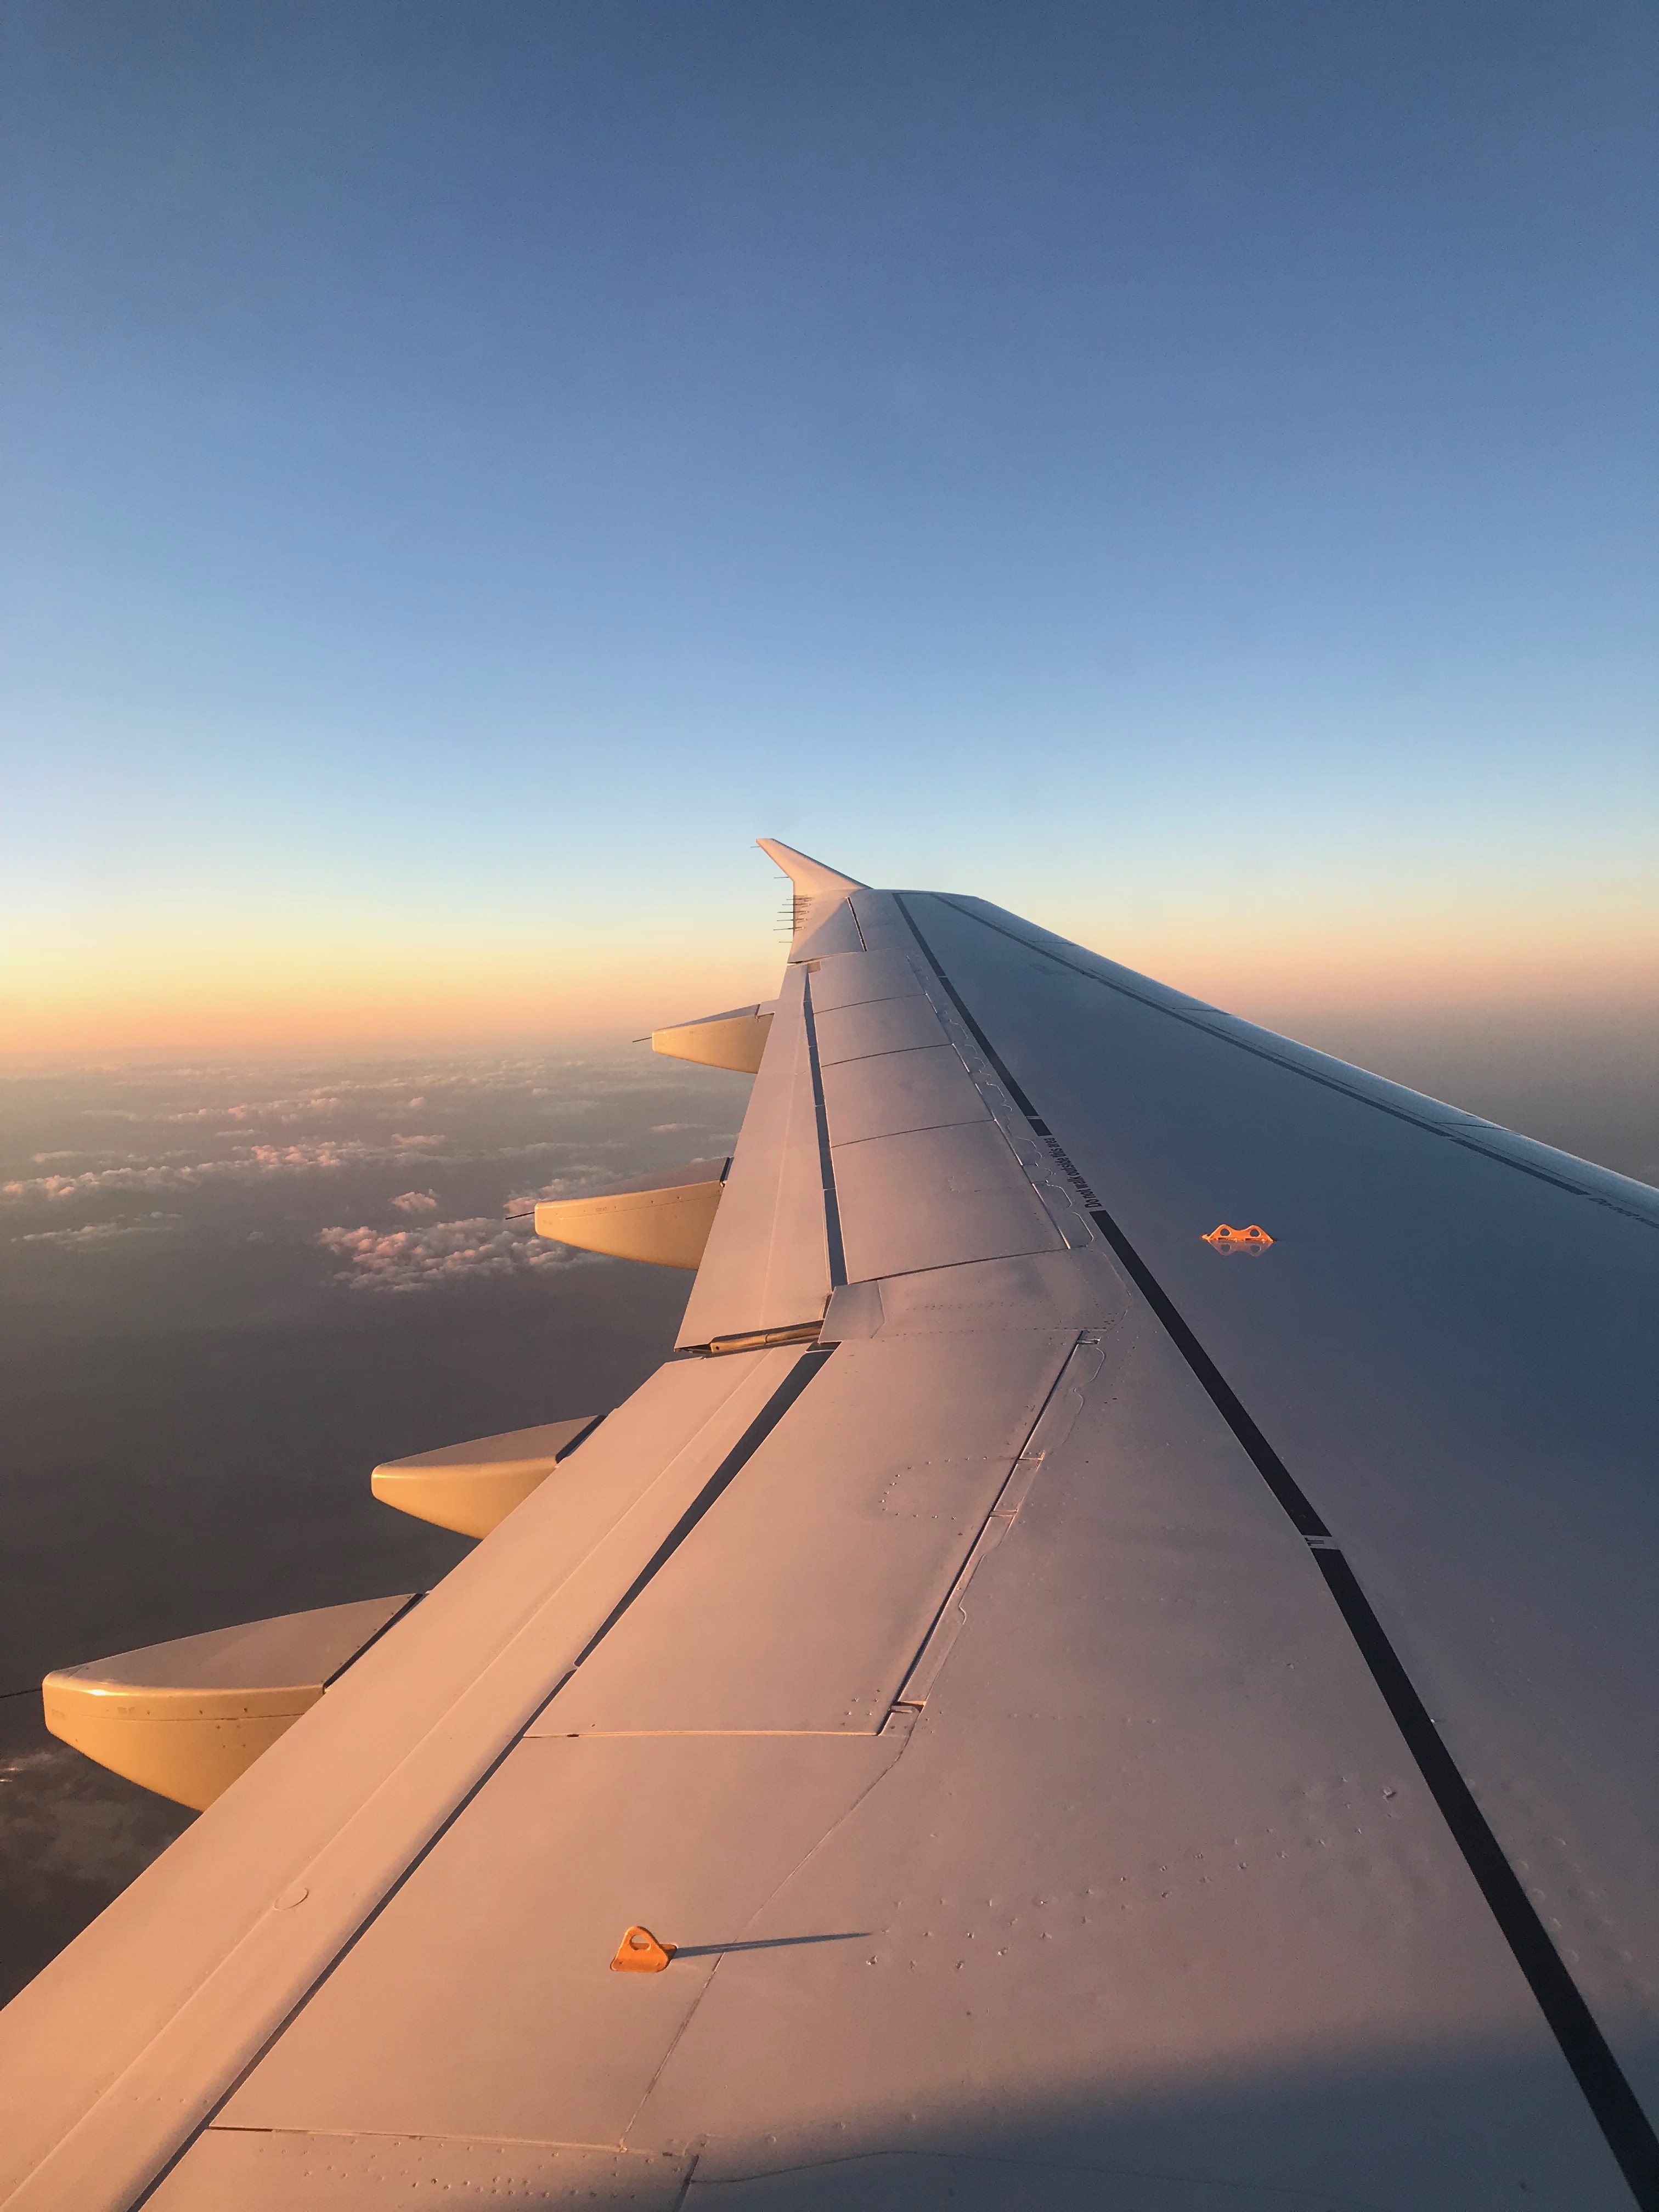 Sunset on the way to Munich